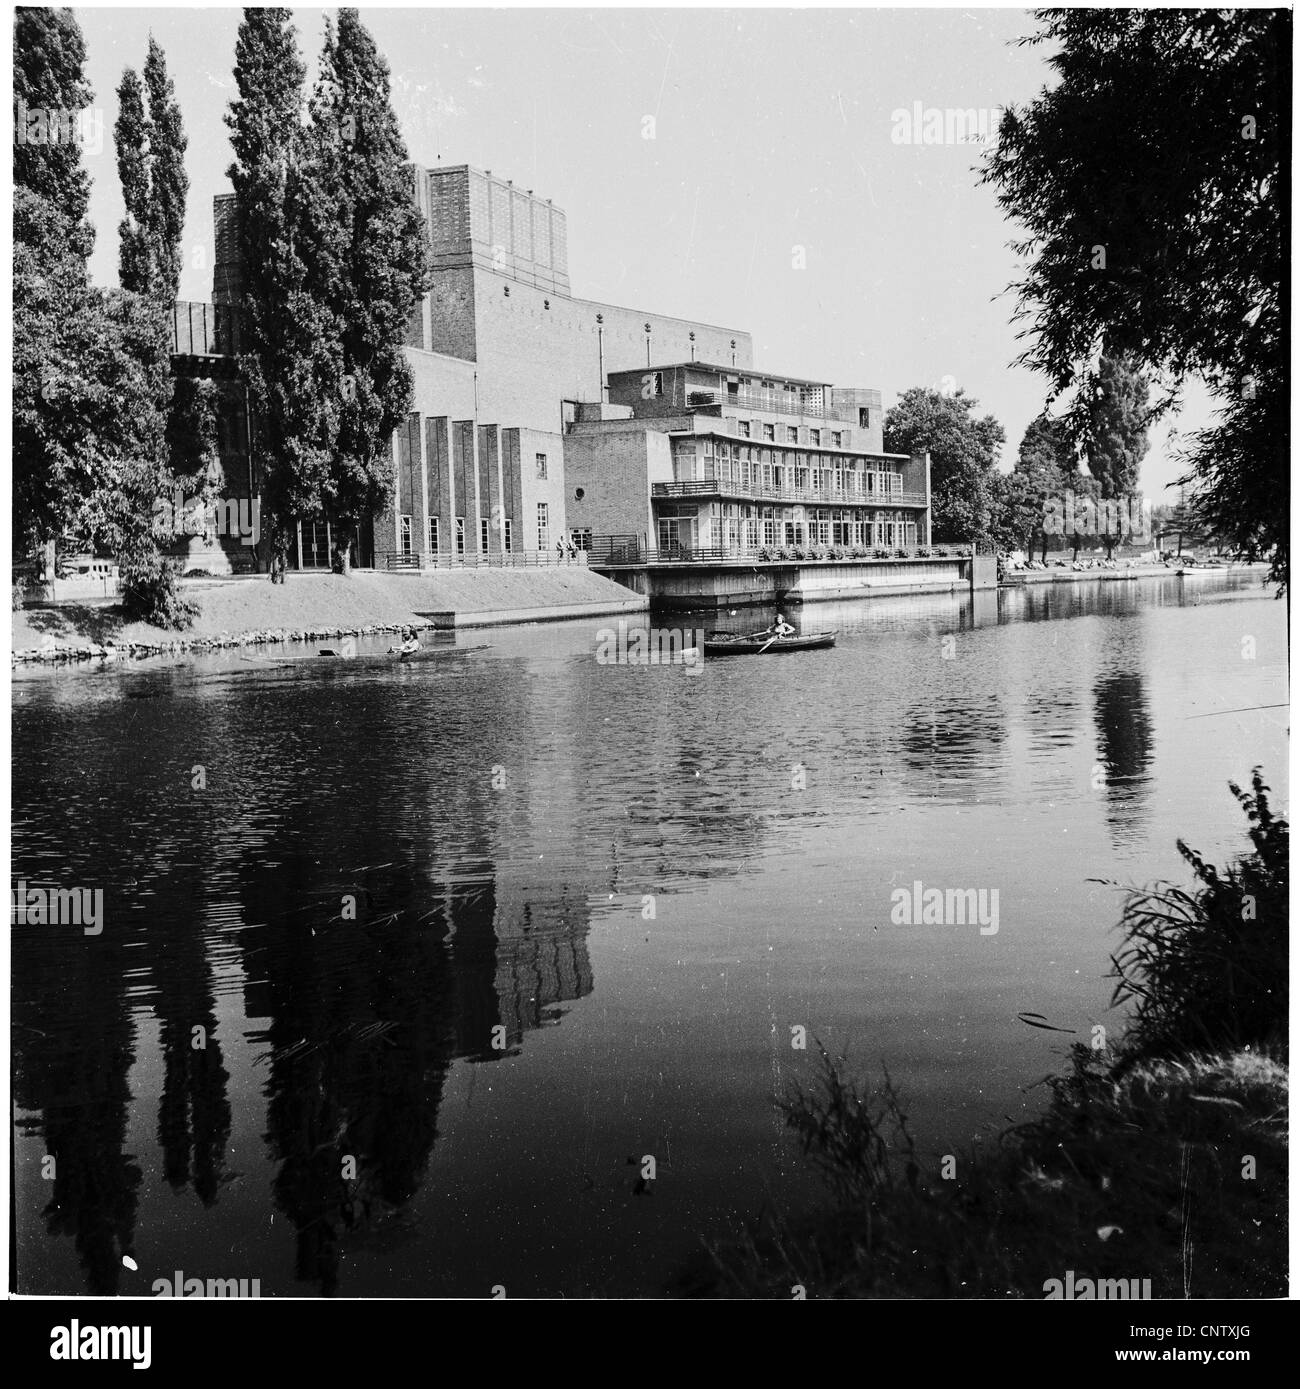 Historisches Bild from1960s Shakespeare-Theater am Fluss Avon, den berühmten elisabethanischen englische Dramatiker feiern. Stockfoto